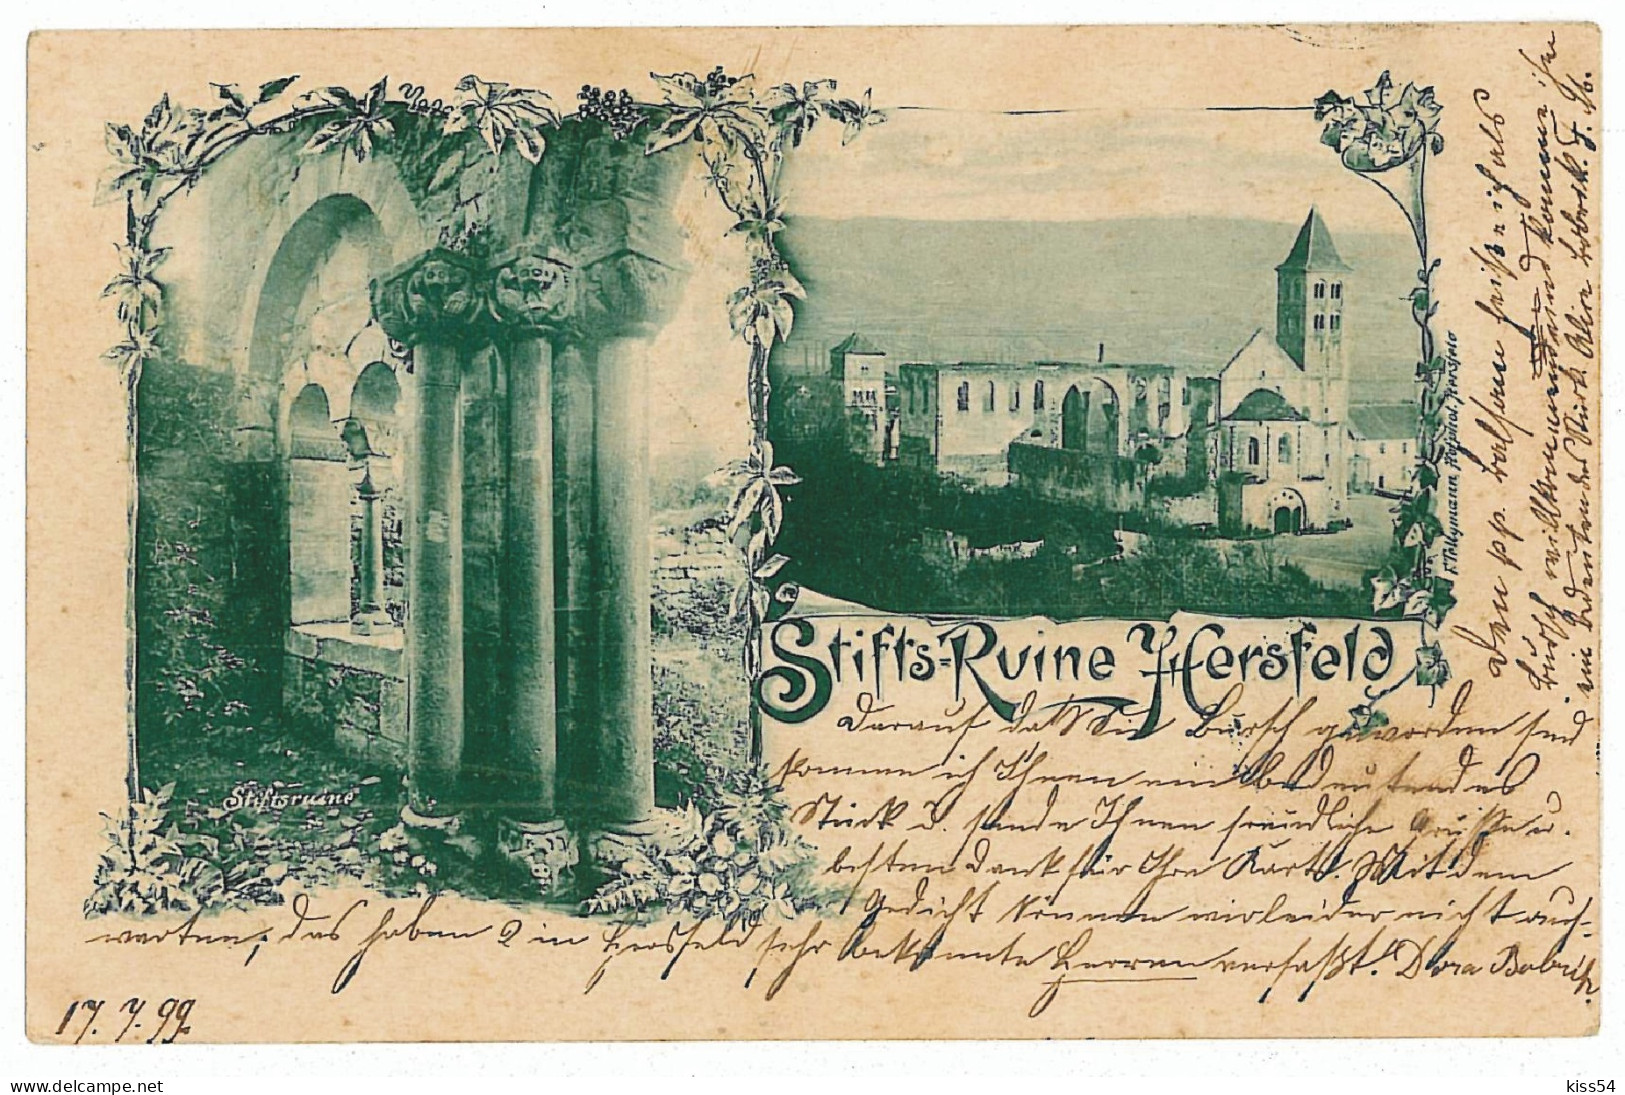 GER 44 - 5714 BAD HERSFELD, Litho, Germany - Old Postcard - Used - 1899 - Bad Hersfeld